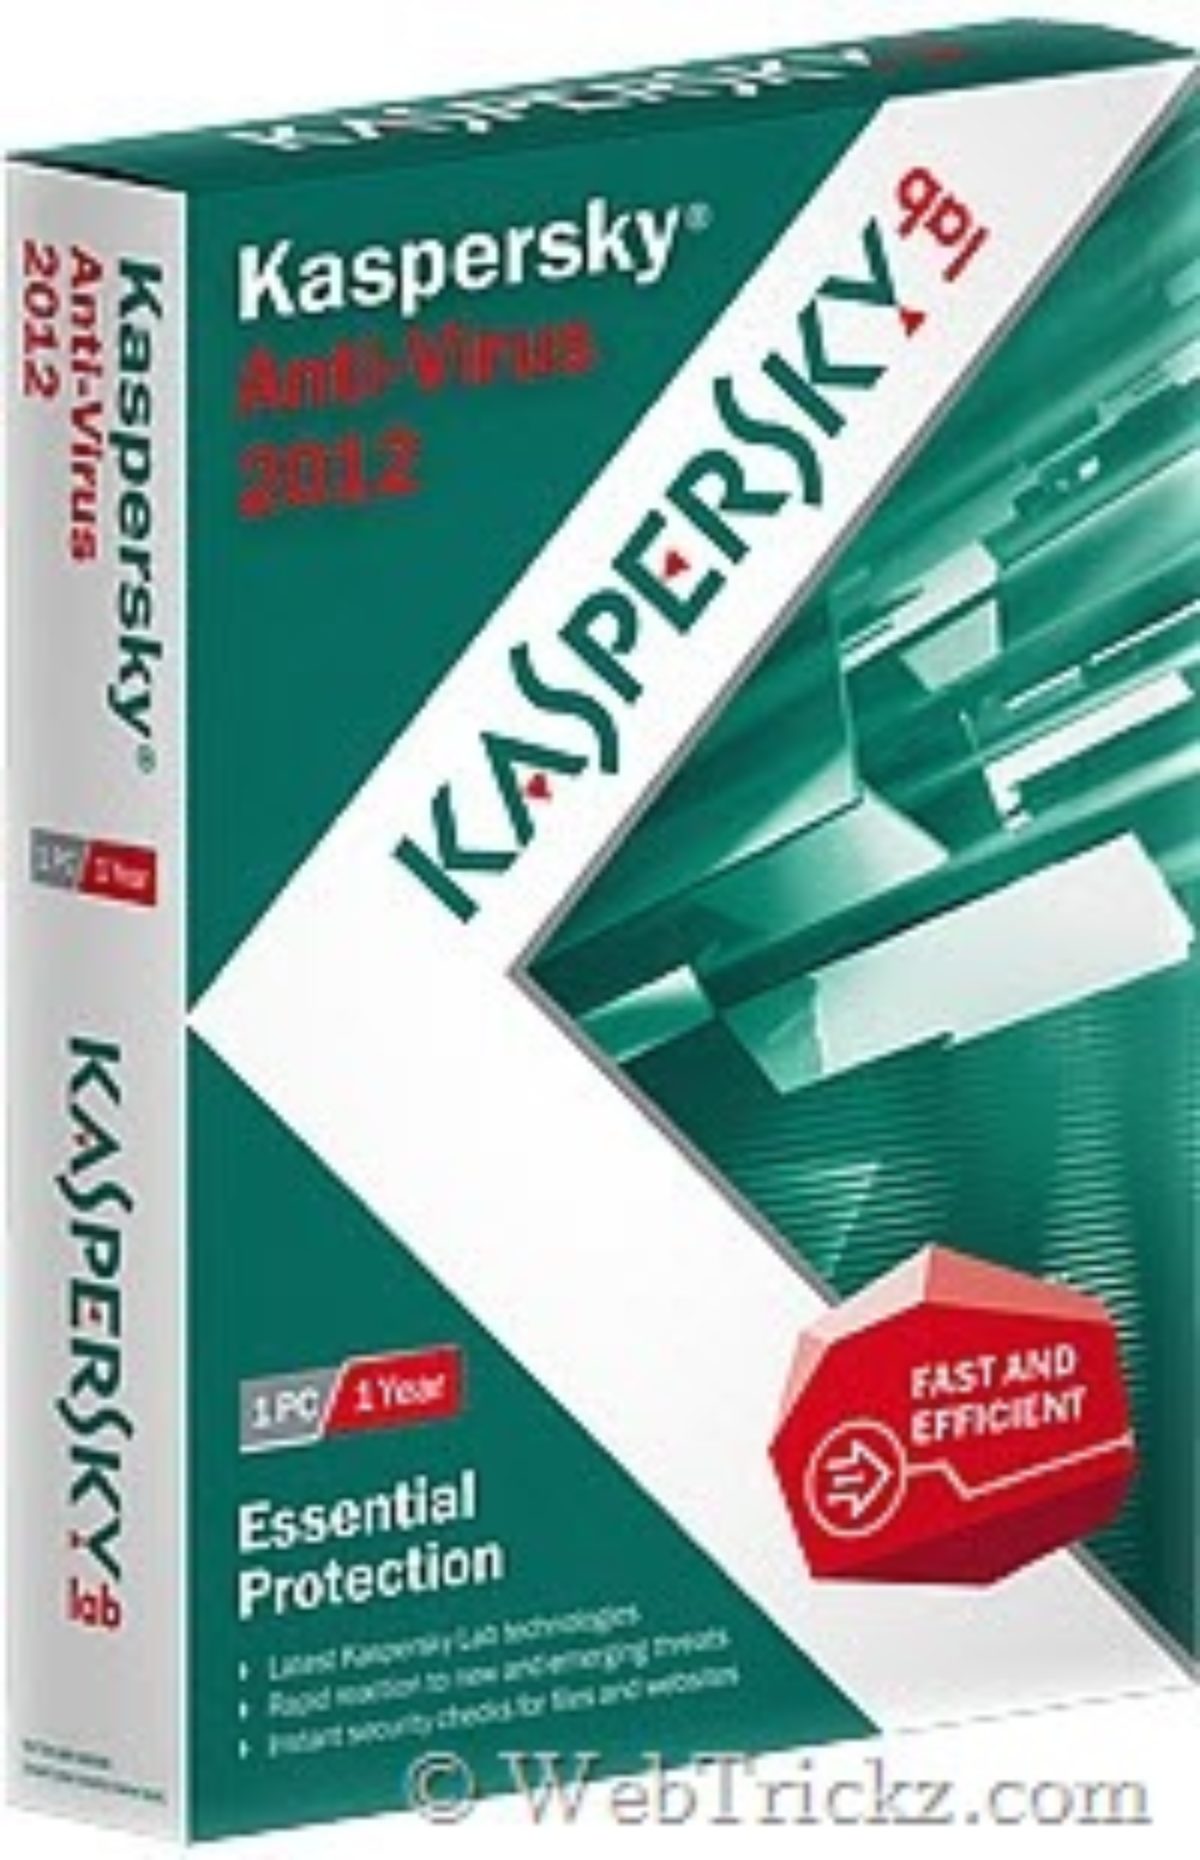 You are currently viewing Como Restaurar A Versão Original Do Kaspersky Anti-Virus 2012?